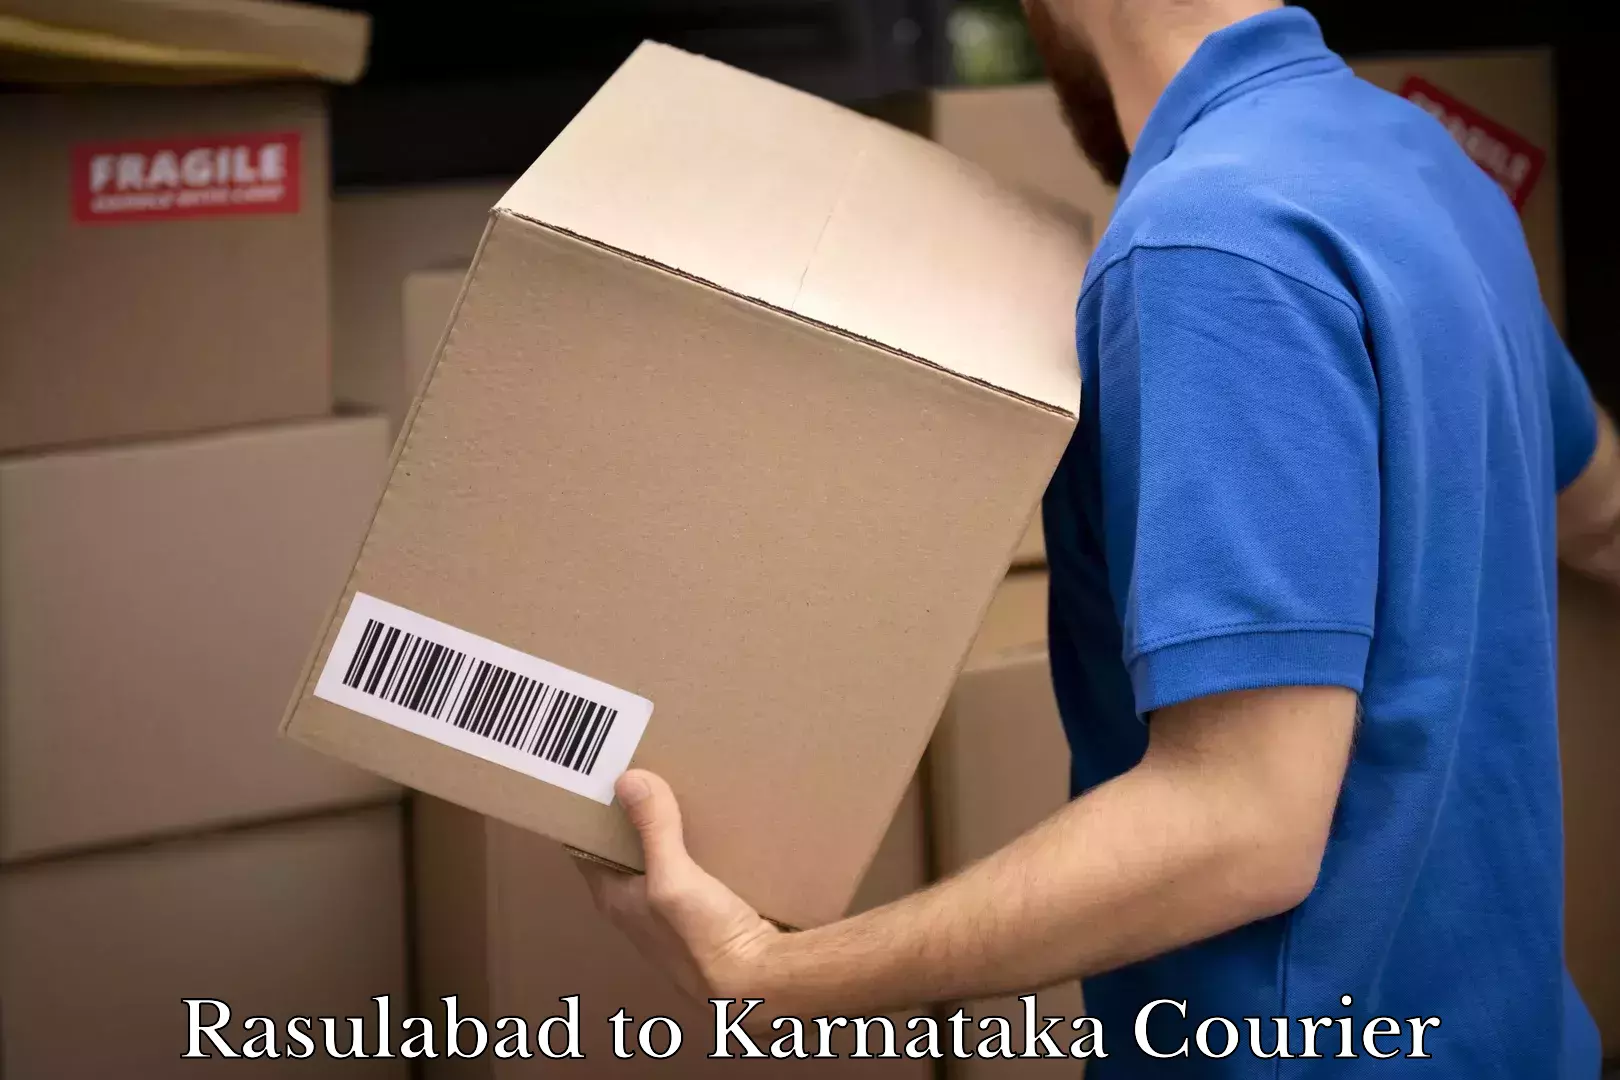 Logistics service provider Rasulabad to Karnataka